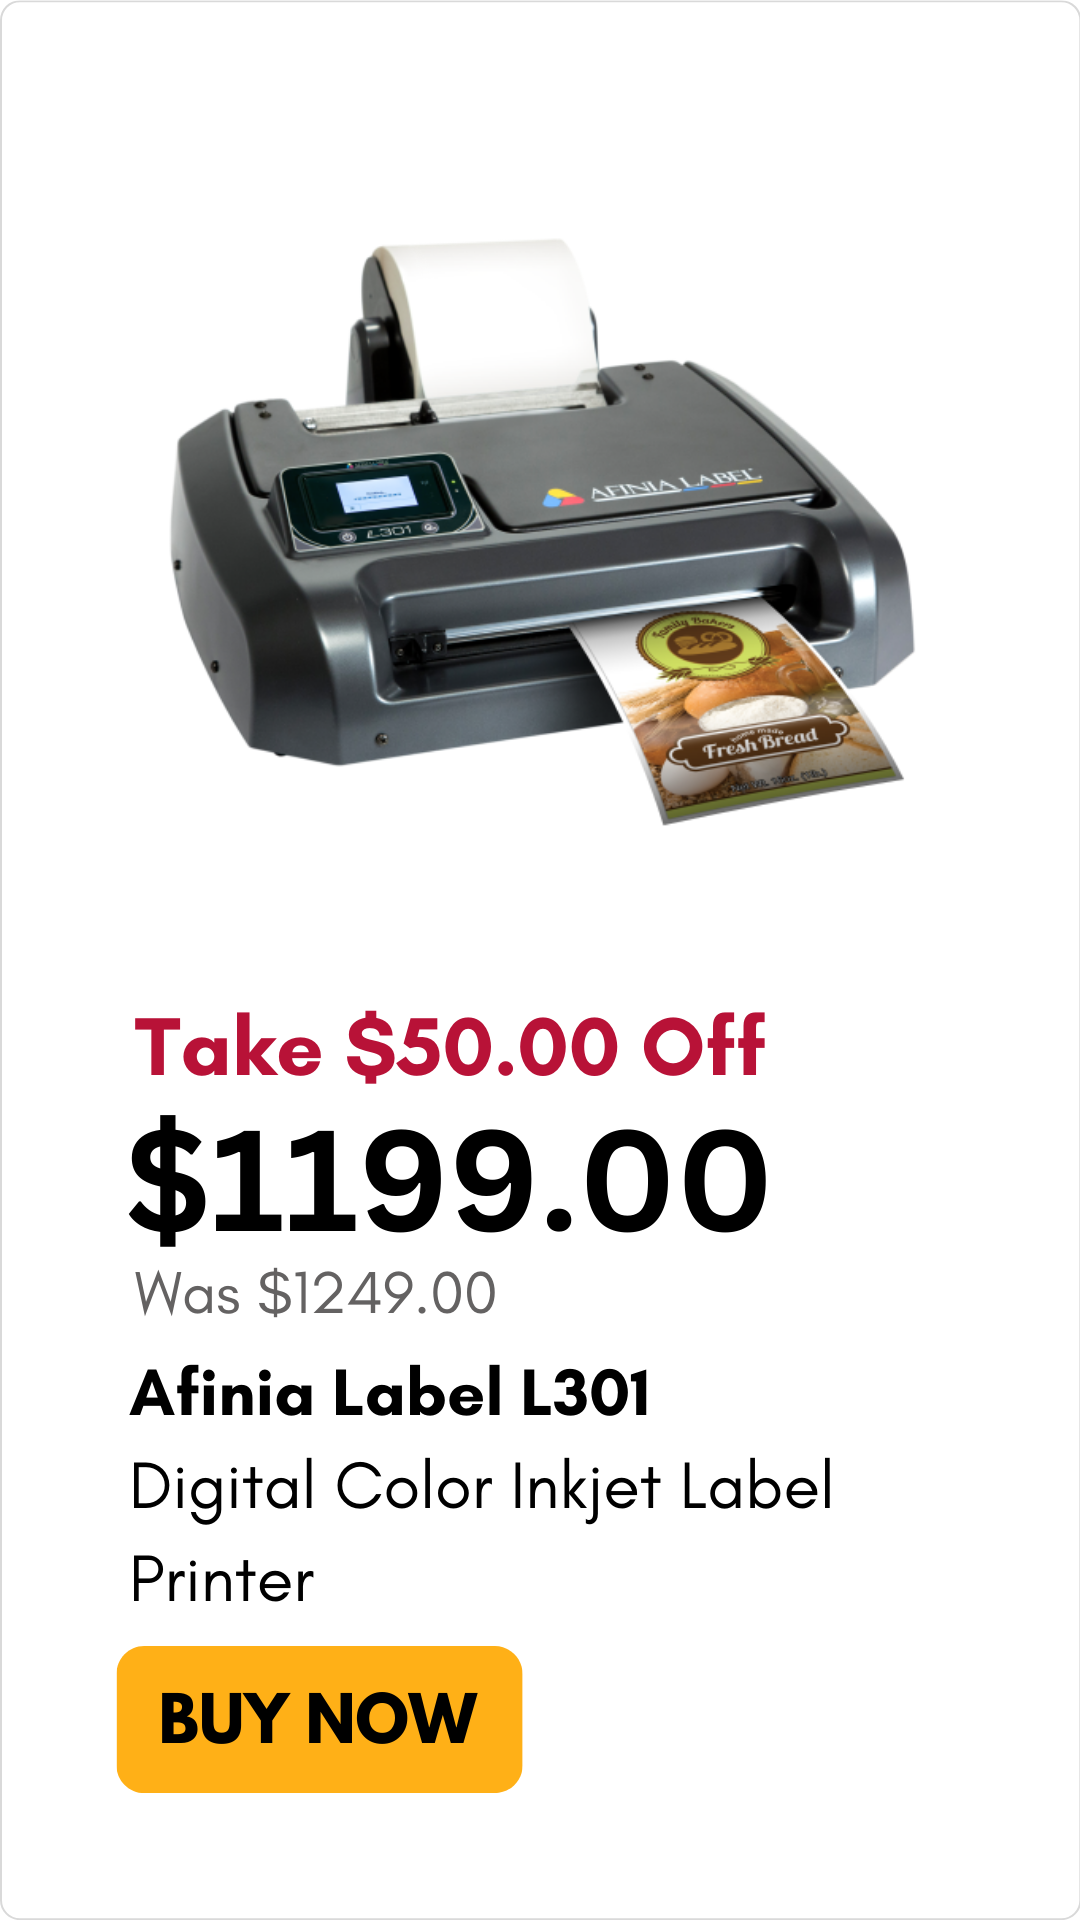 Afinia Label L301 Digital Color Inkjet Label Printer on sale for $50 off